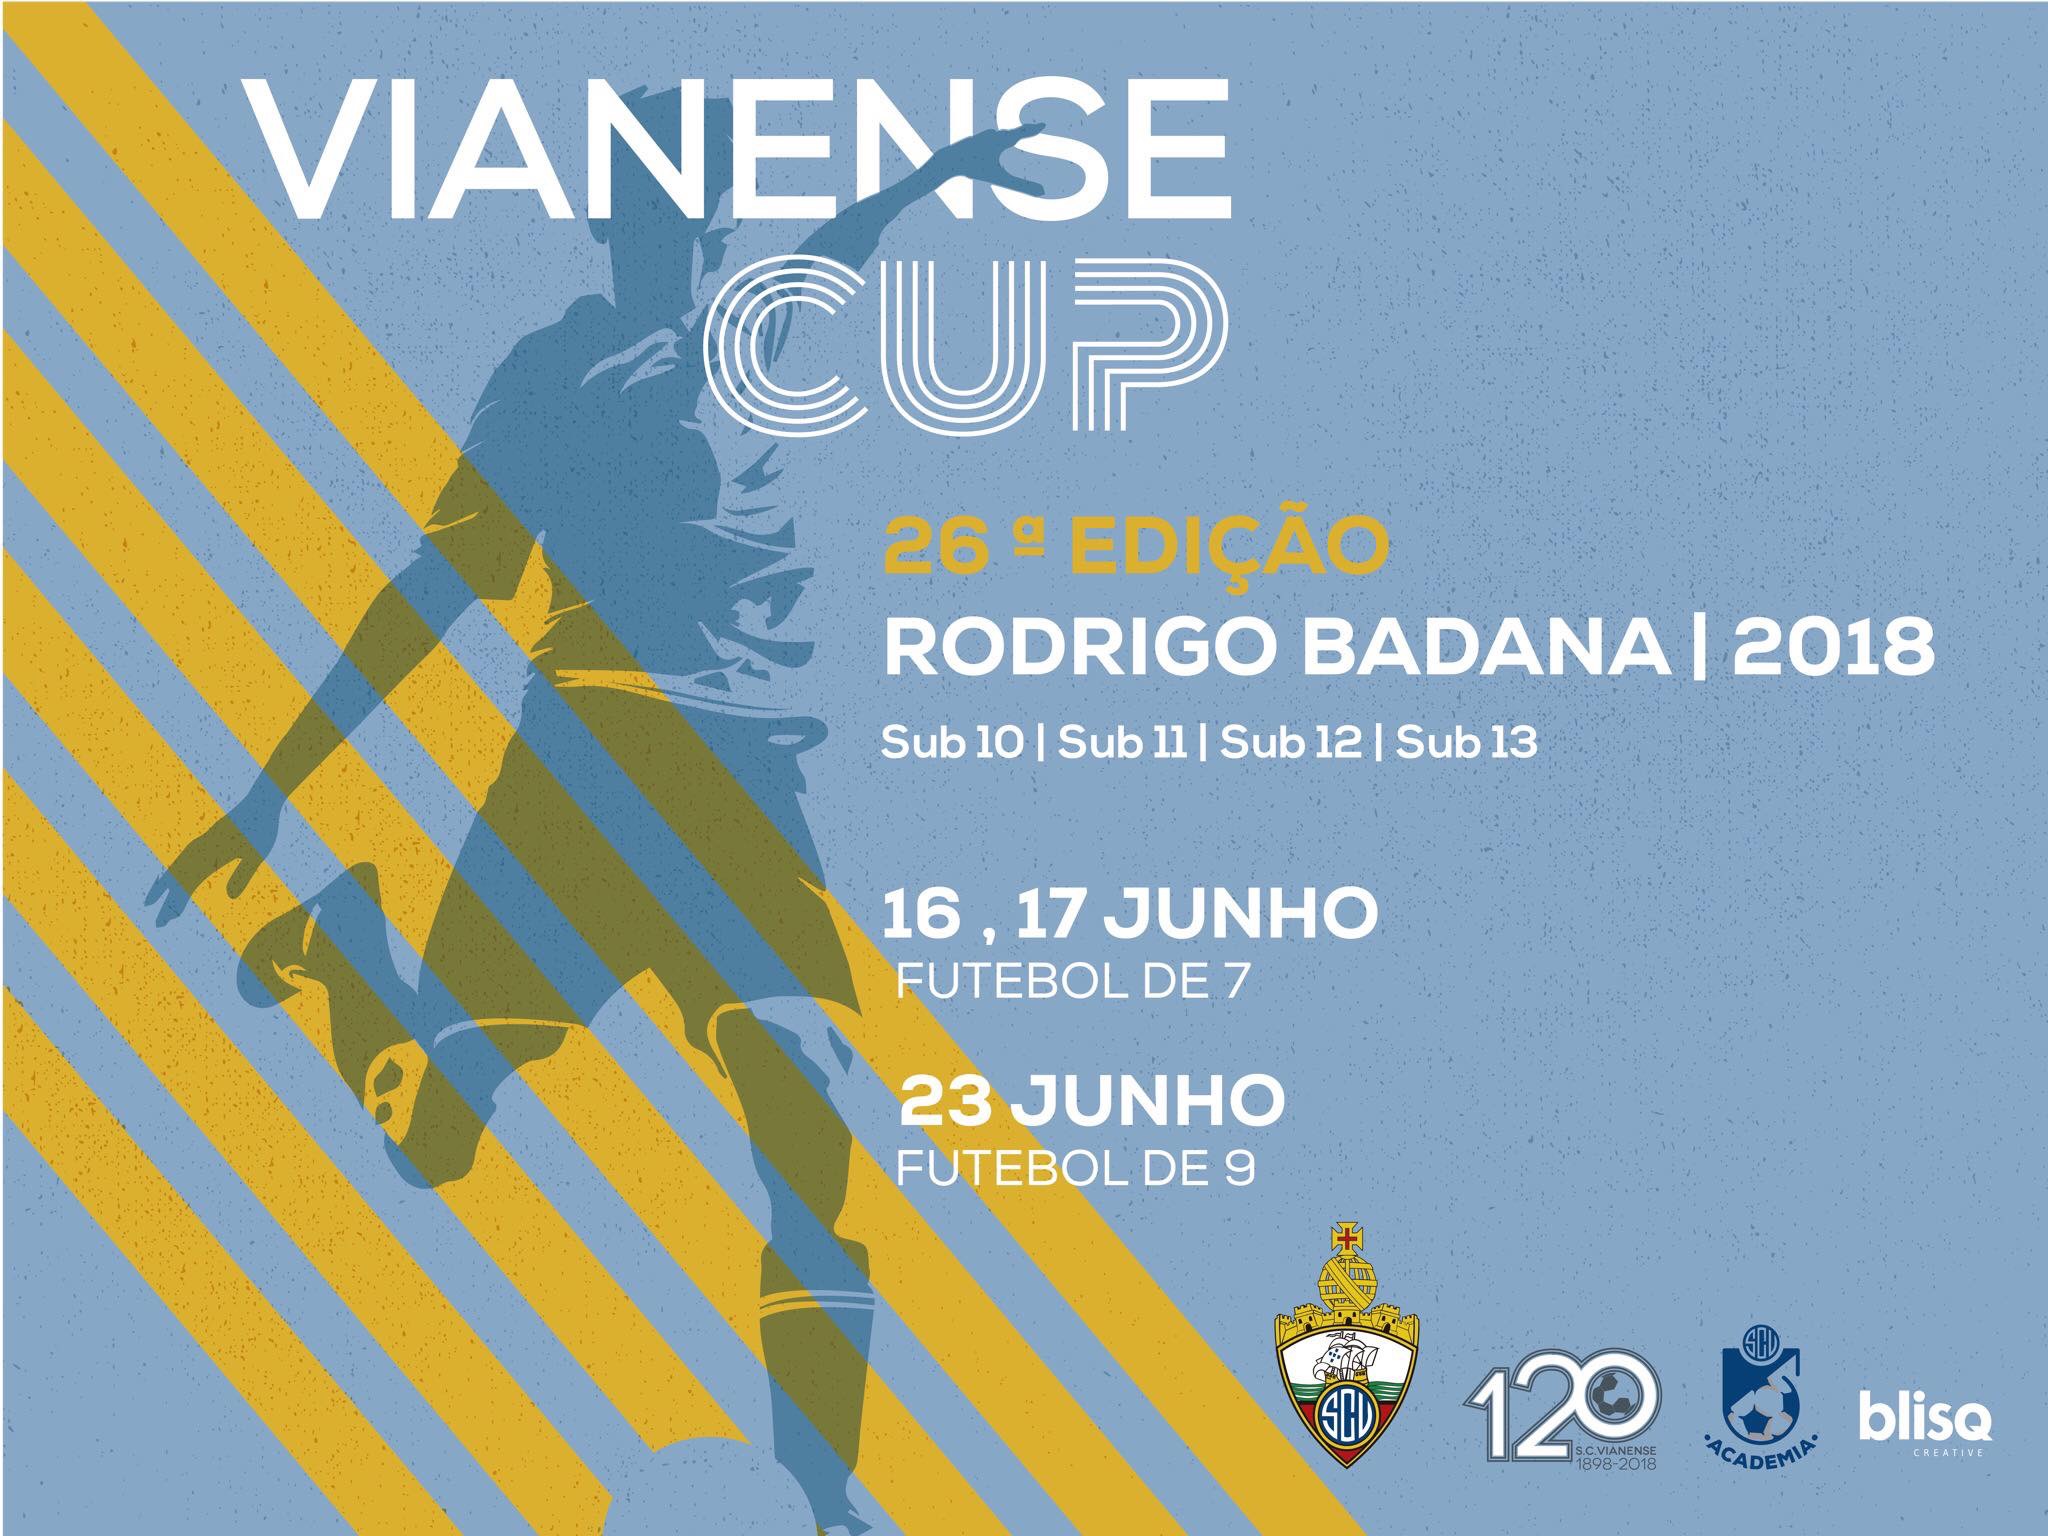 Vianense Cup 2018: Mais uma edição de sucesso!